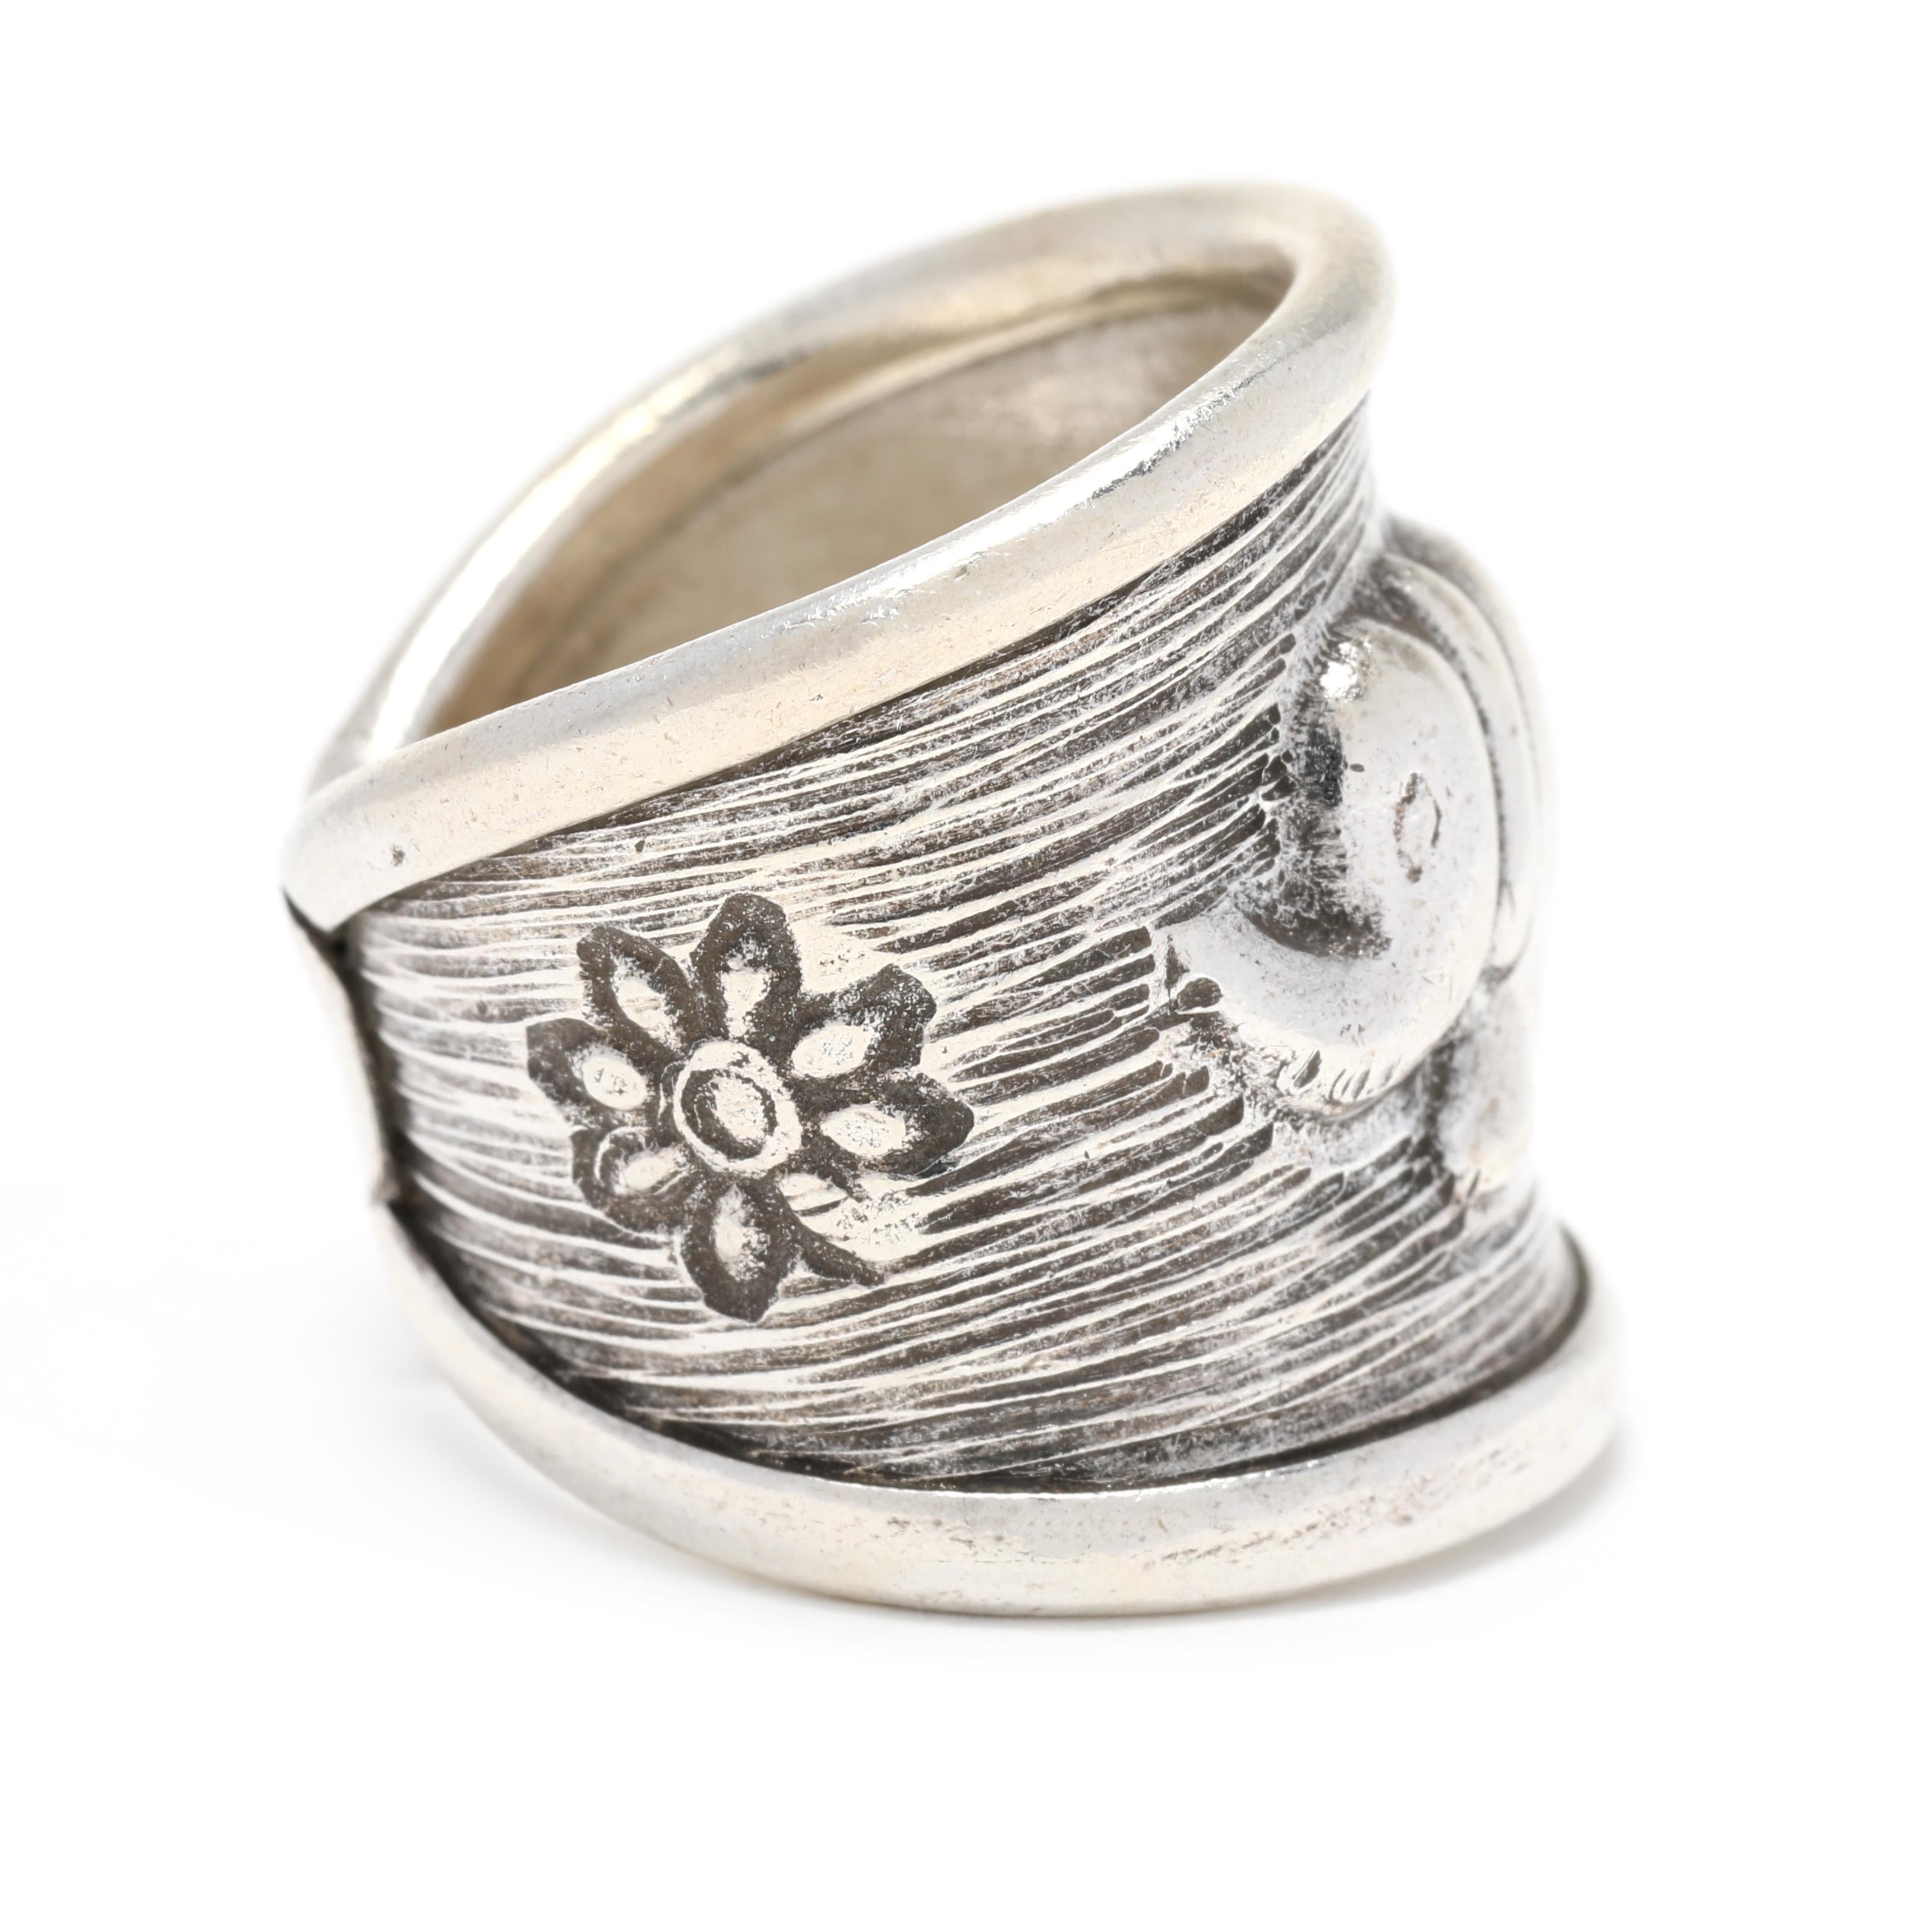 Setzen Sie ein Zeichen mit diesem schönen breiten Elefantenband Sterling Silber Ring. Dieser Ring aus hochwertigem Sterlingsilber mit einzigartigem Elefantenmotiv wird mit Sicherheit zu einem Lieblingsstück. Dieser silberne Elefanten-Liebesring ist